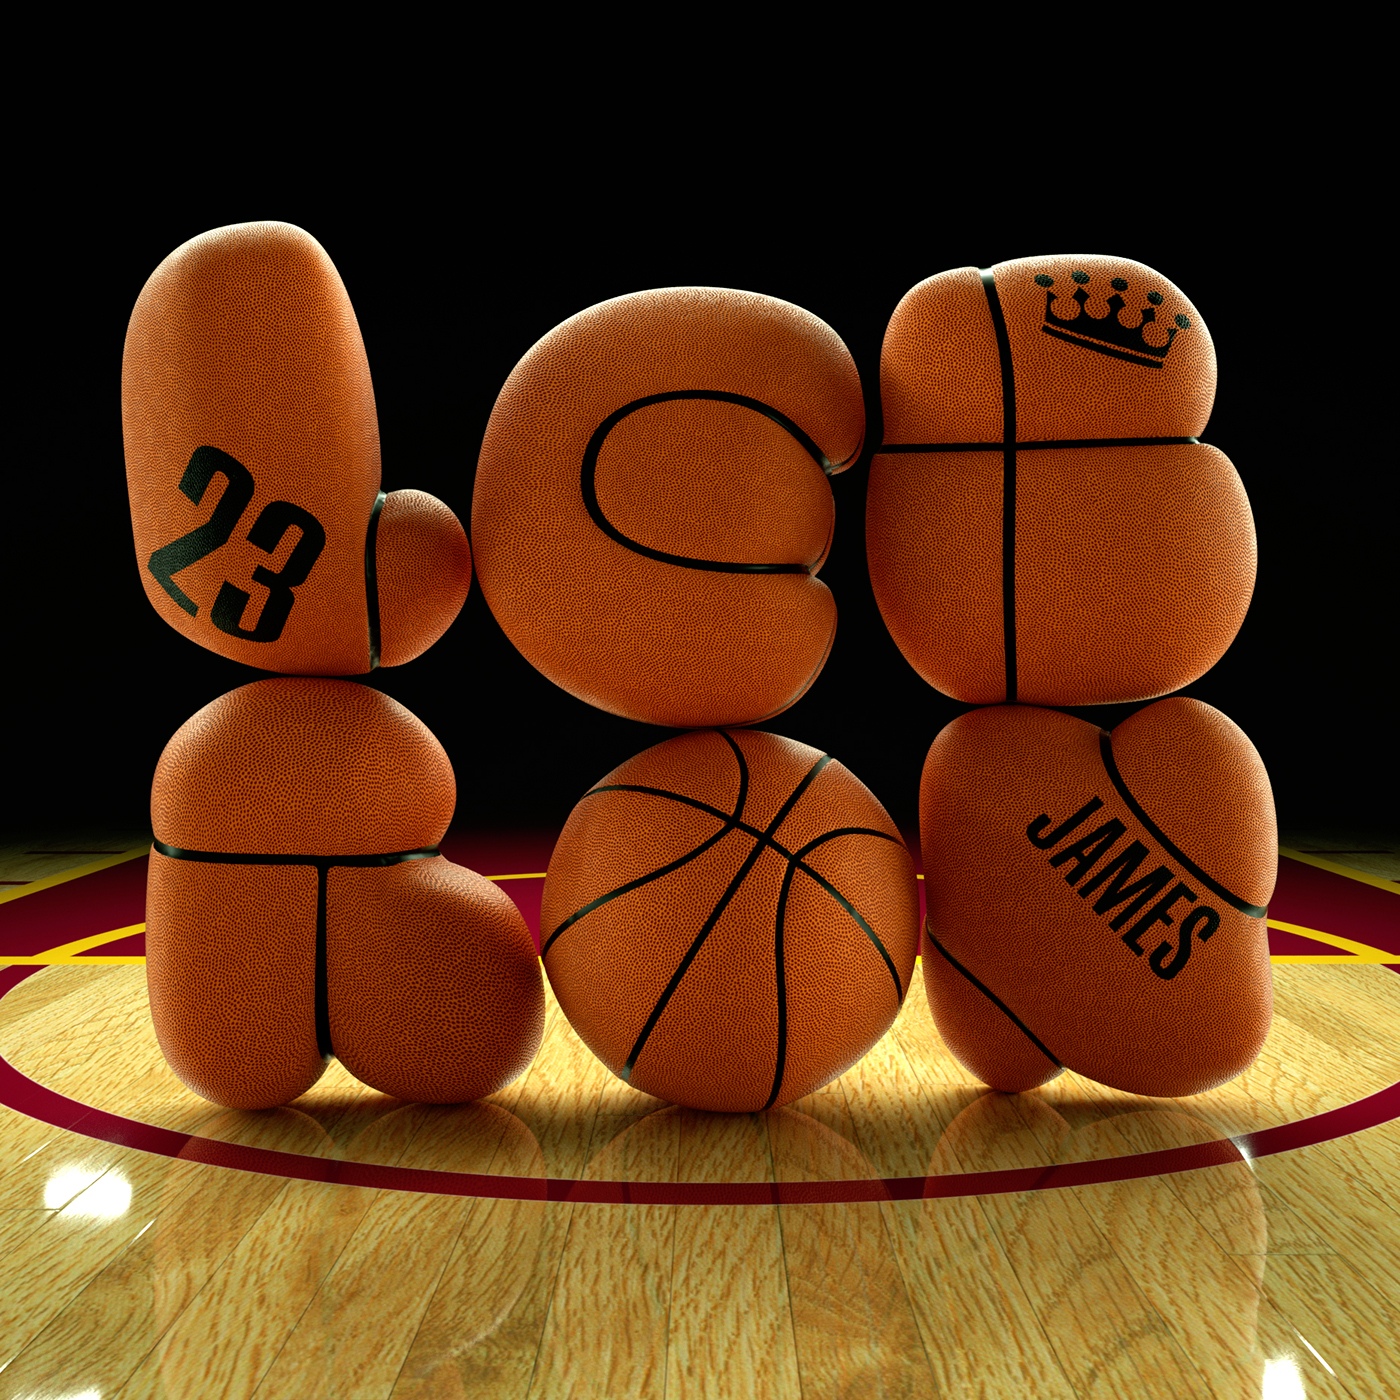 3D illustration CGI 3D typography cinema 4d Octane Render 3D Type digital illustration basketball handmadefont 3D lettering 3D